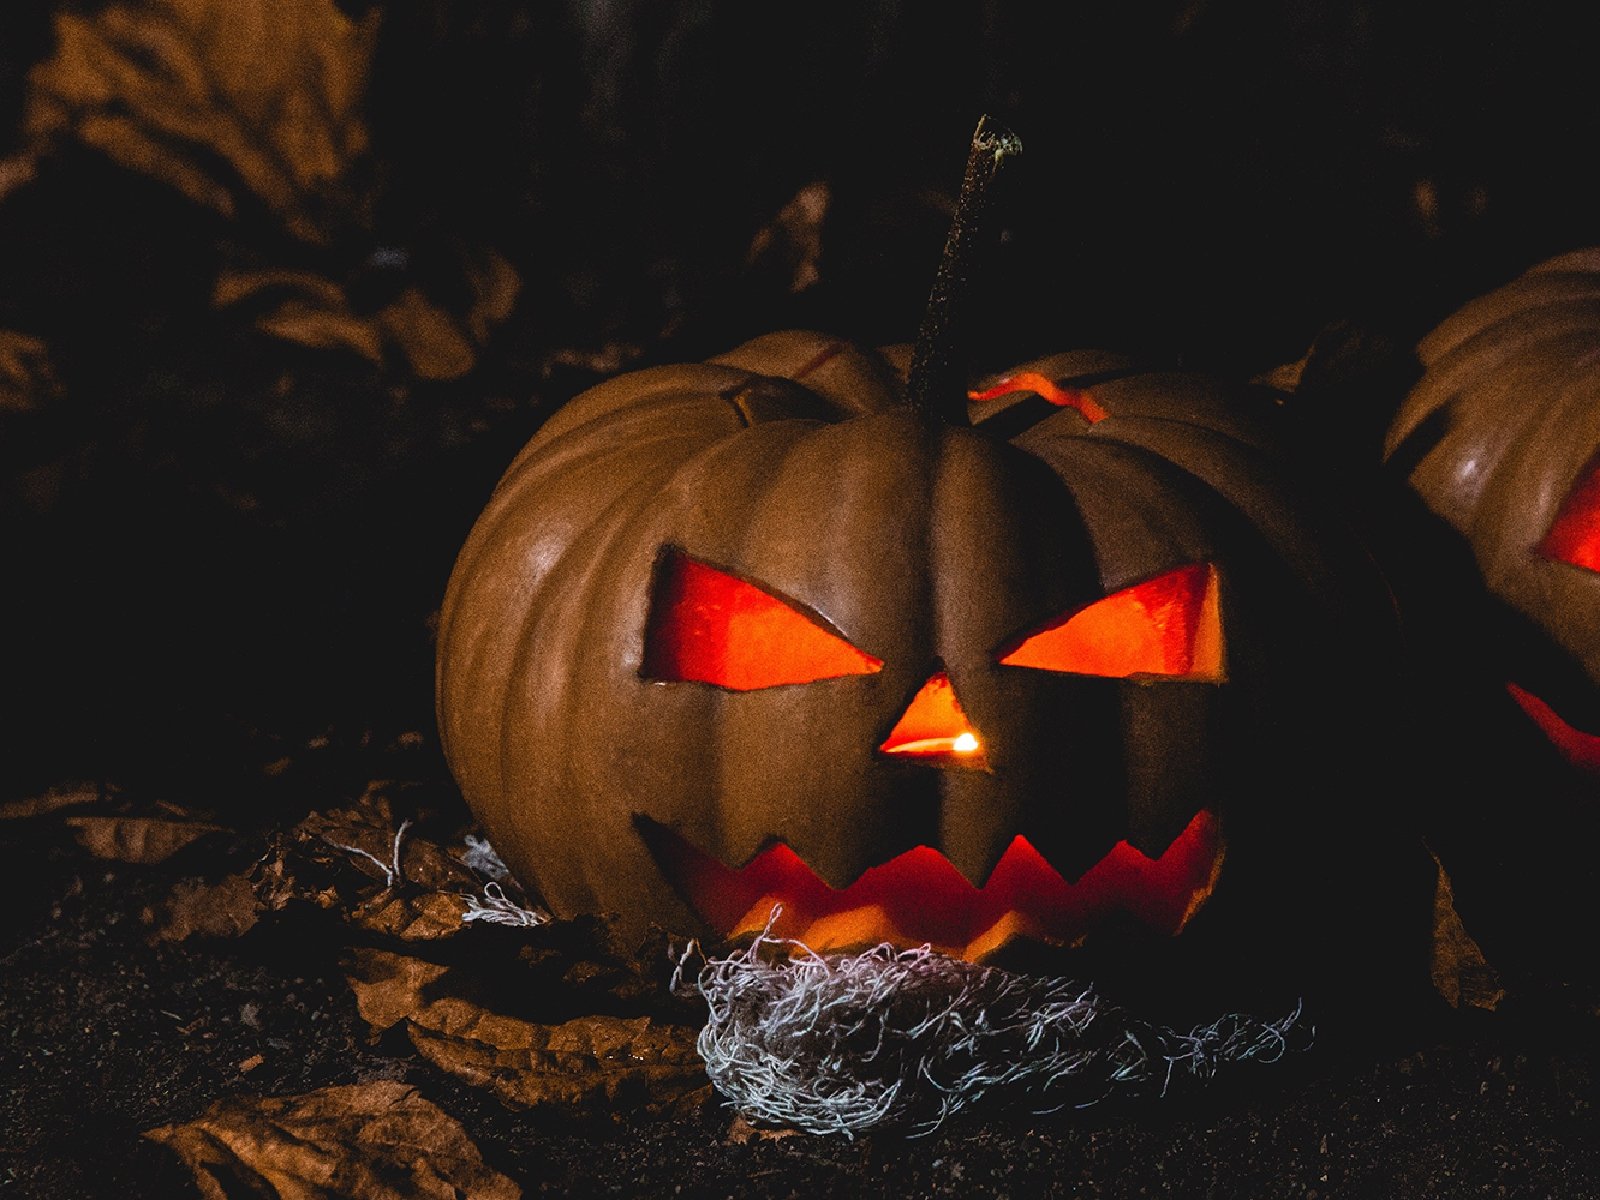 Вечеринка в стиле Хеллоуин – организовываем незабываемый праздник